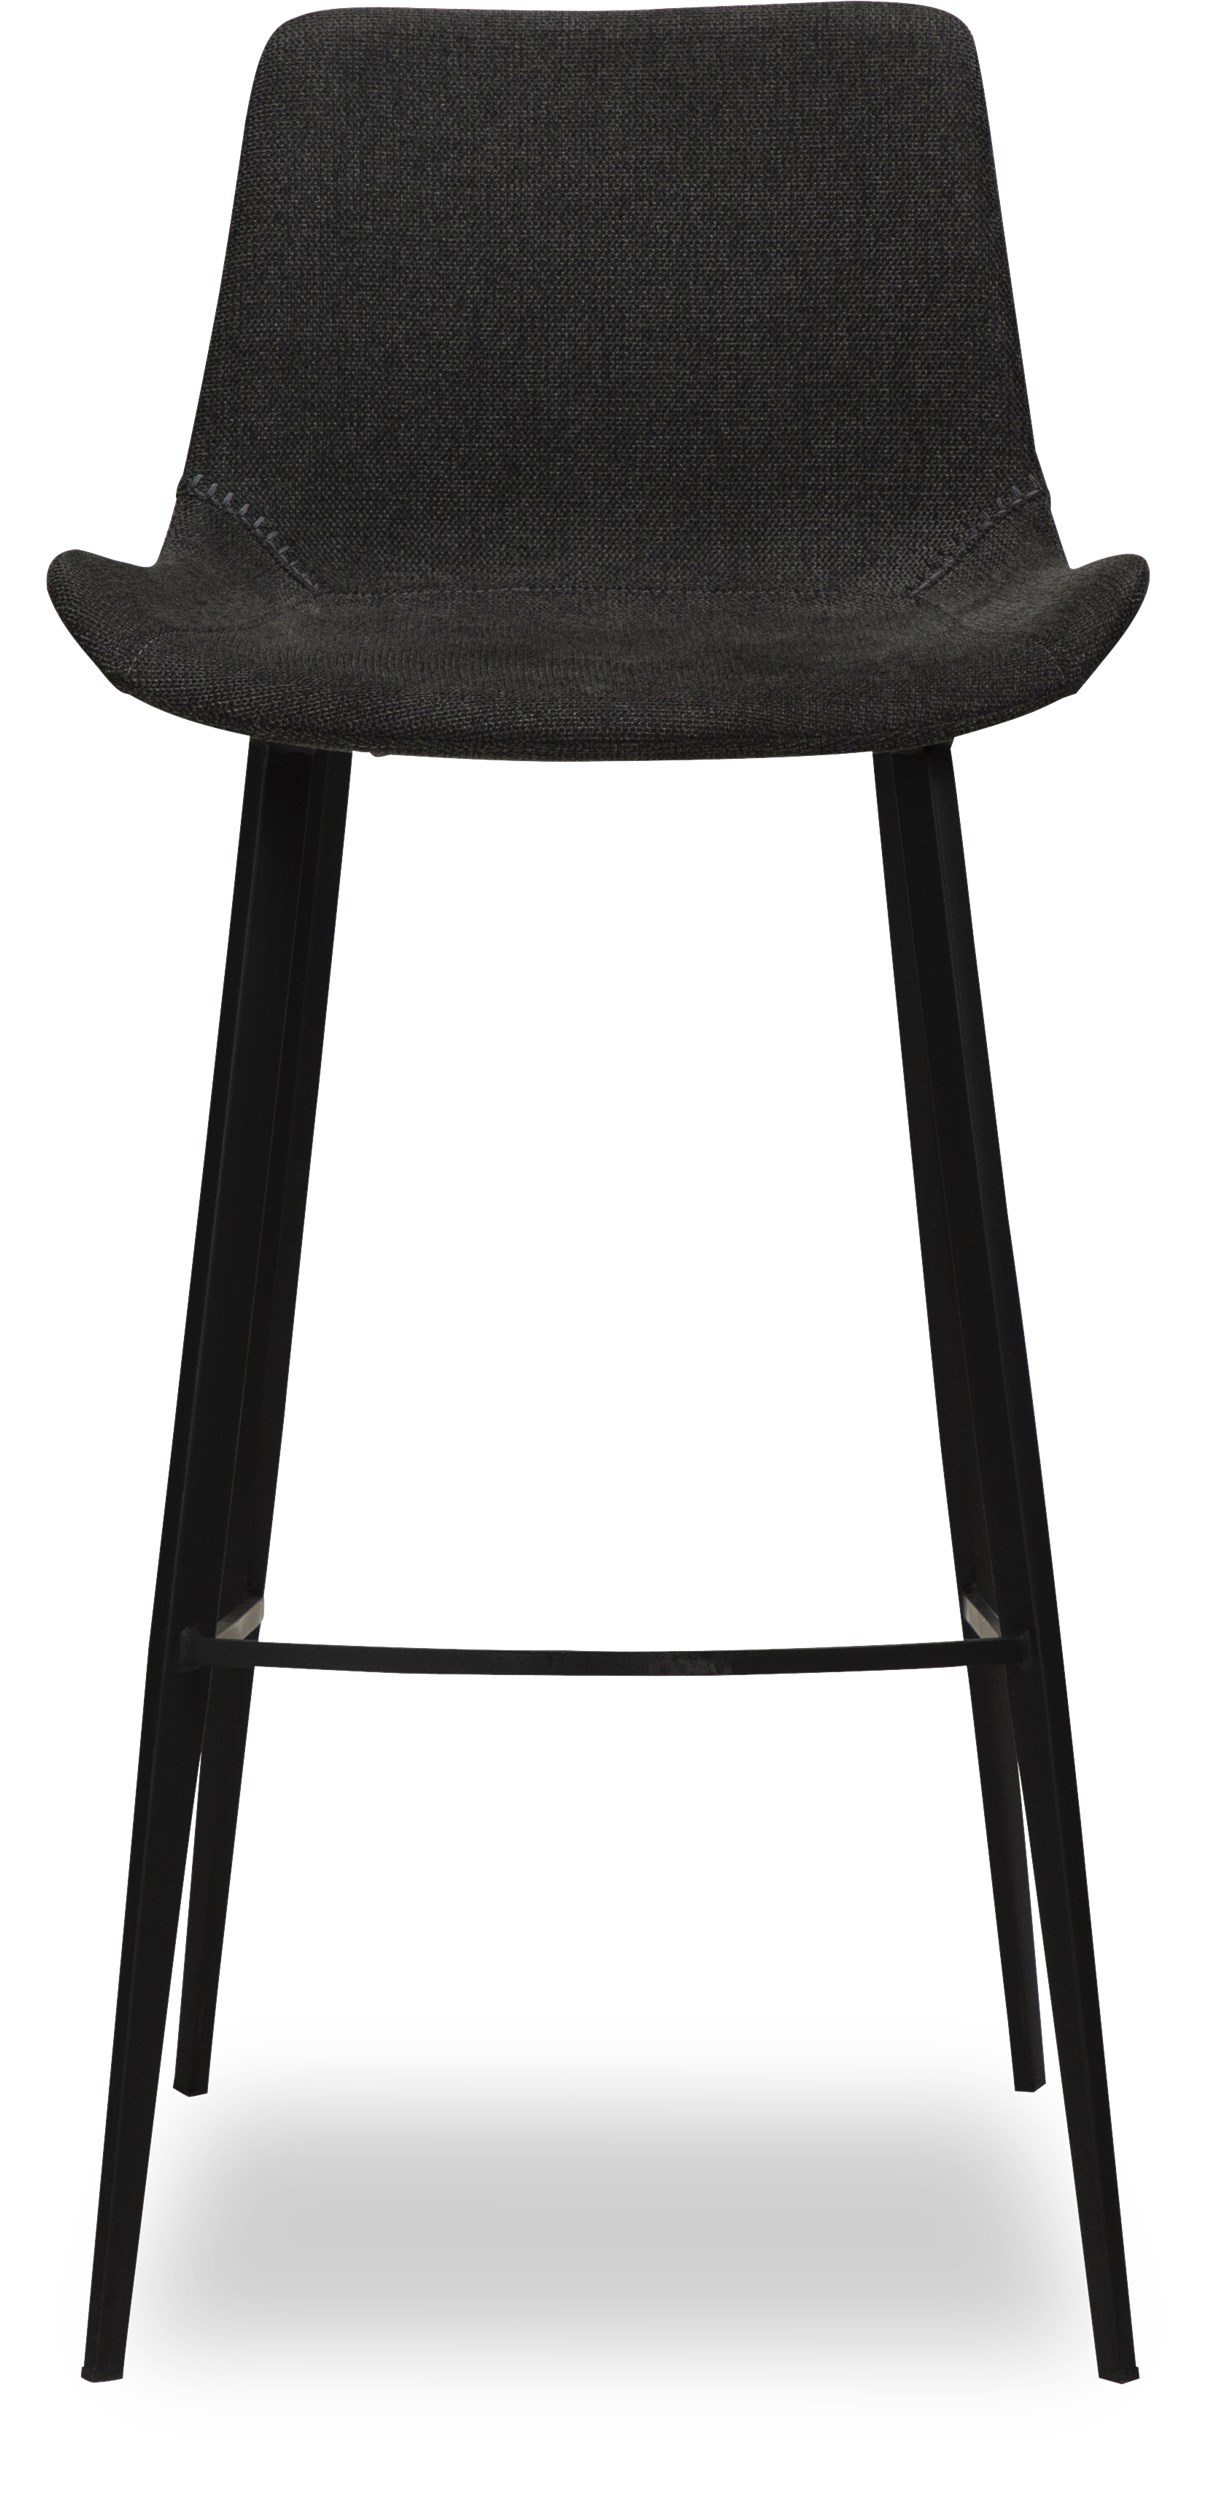 Hype Barstol - Sæde i crow black stof og ben i sortlakeret metal